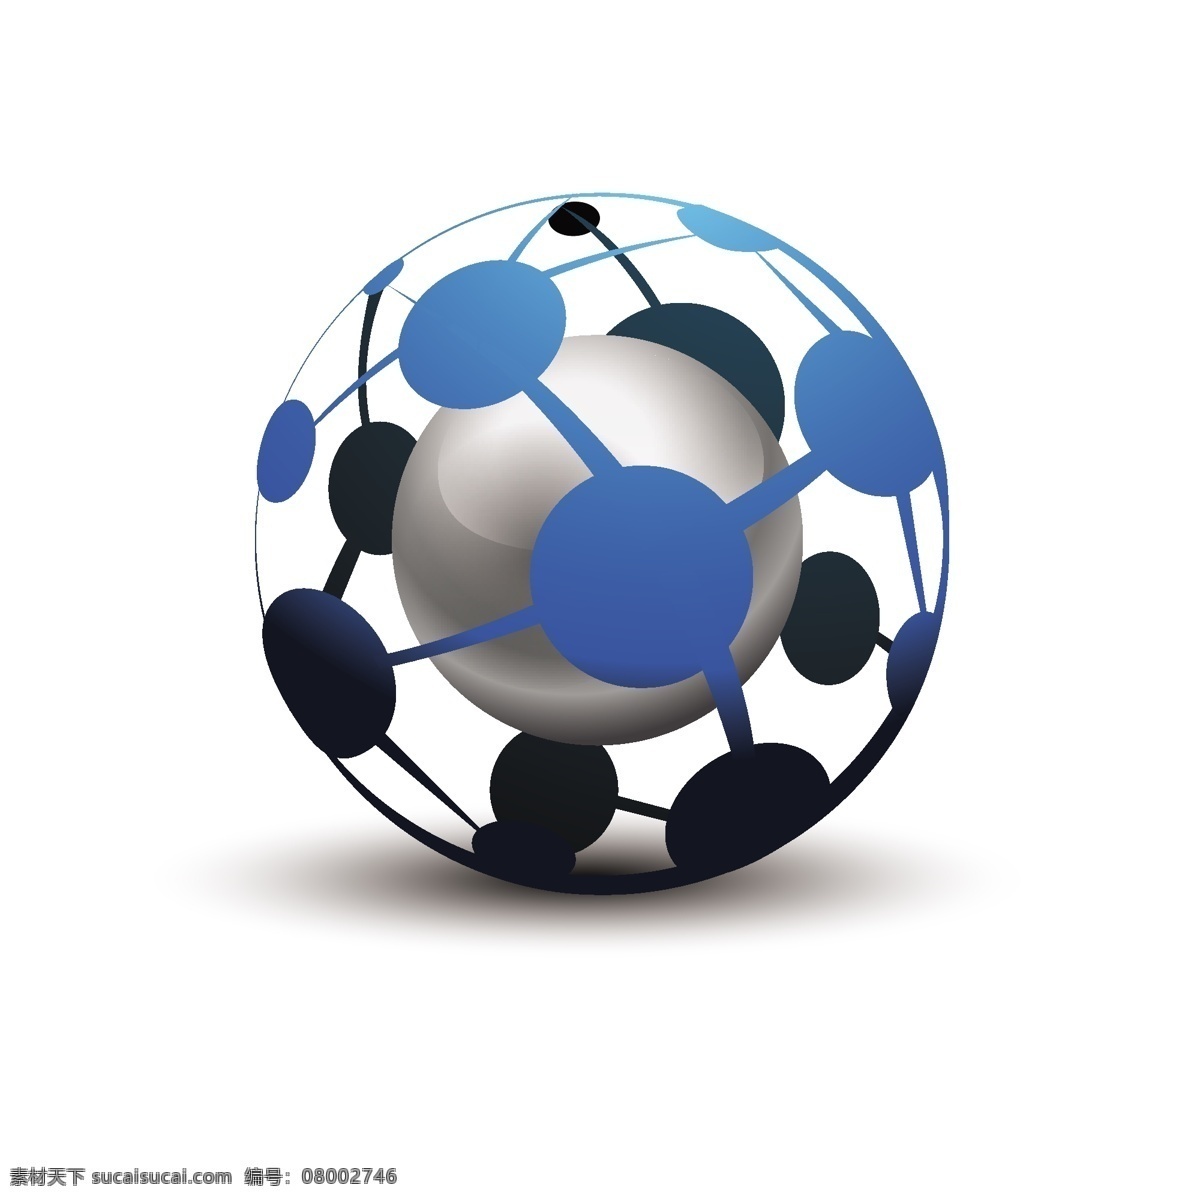 球形 图标 矢量 logo 创意 金属 立体 镂空 球体 组合 原创设计 其他原创设计